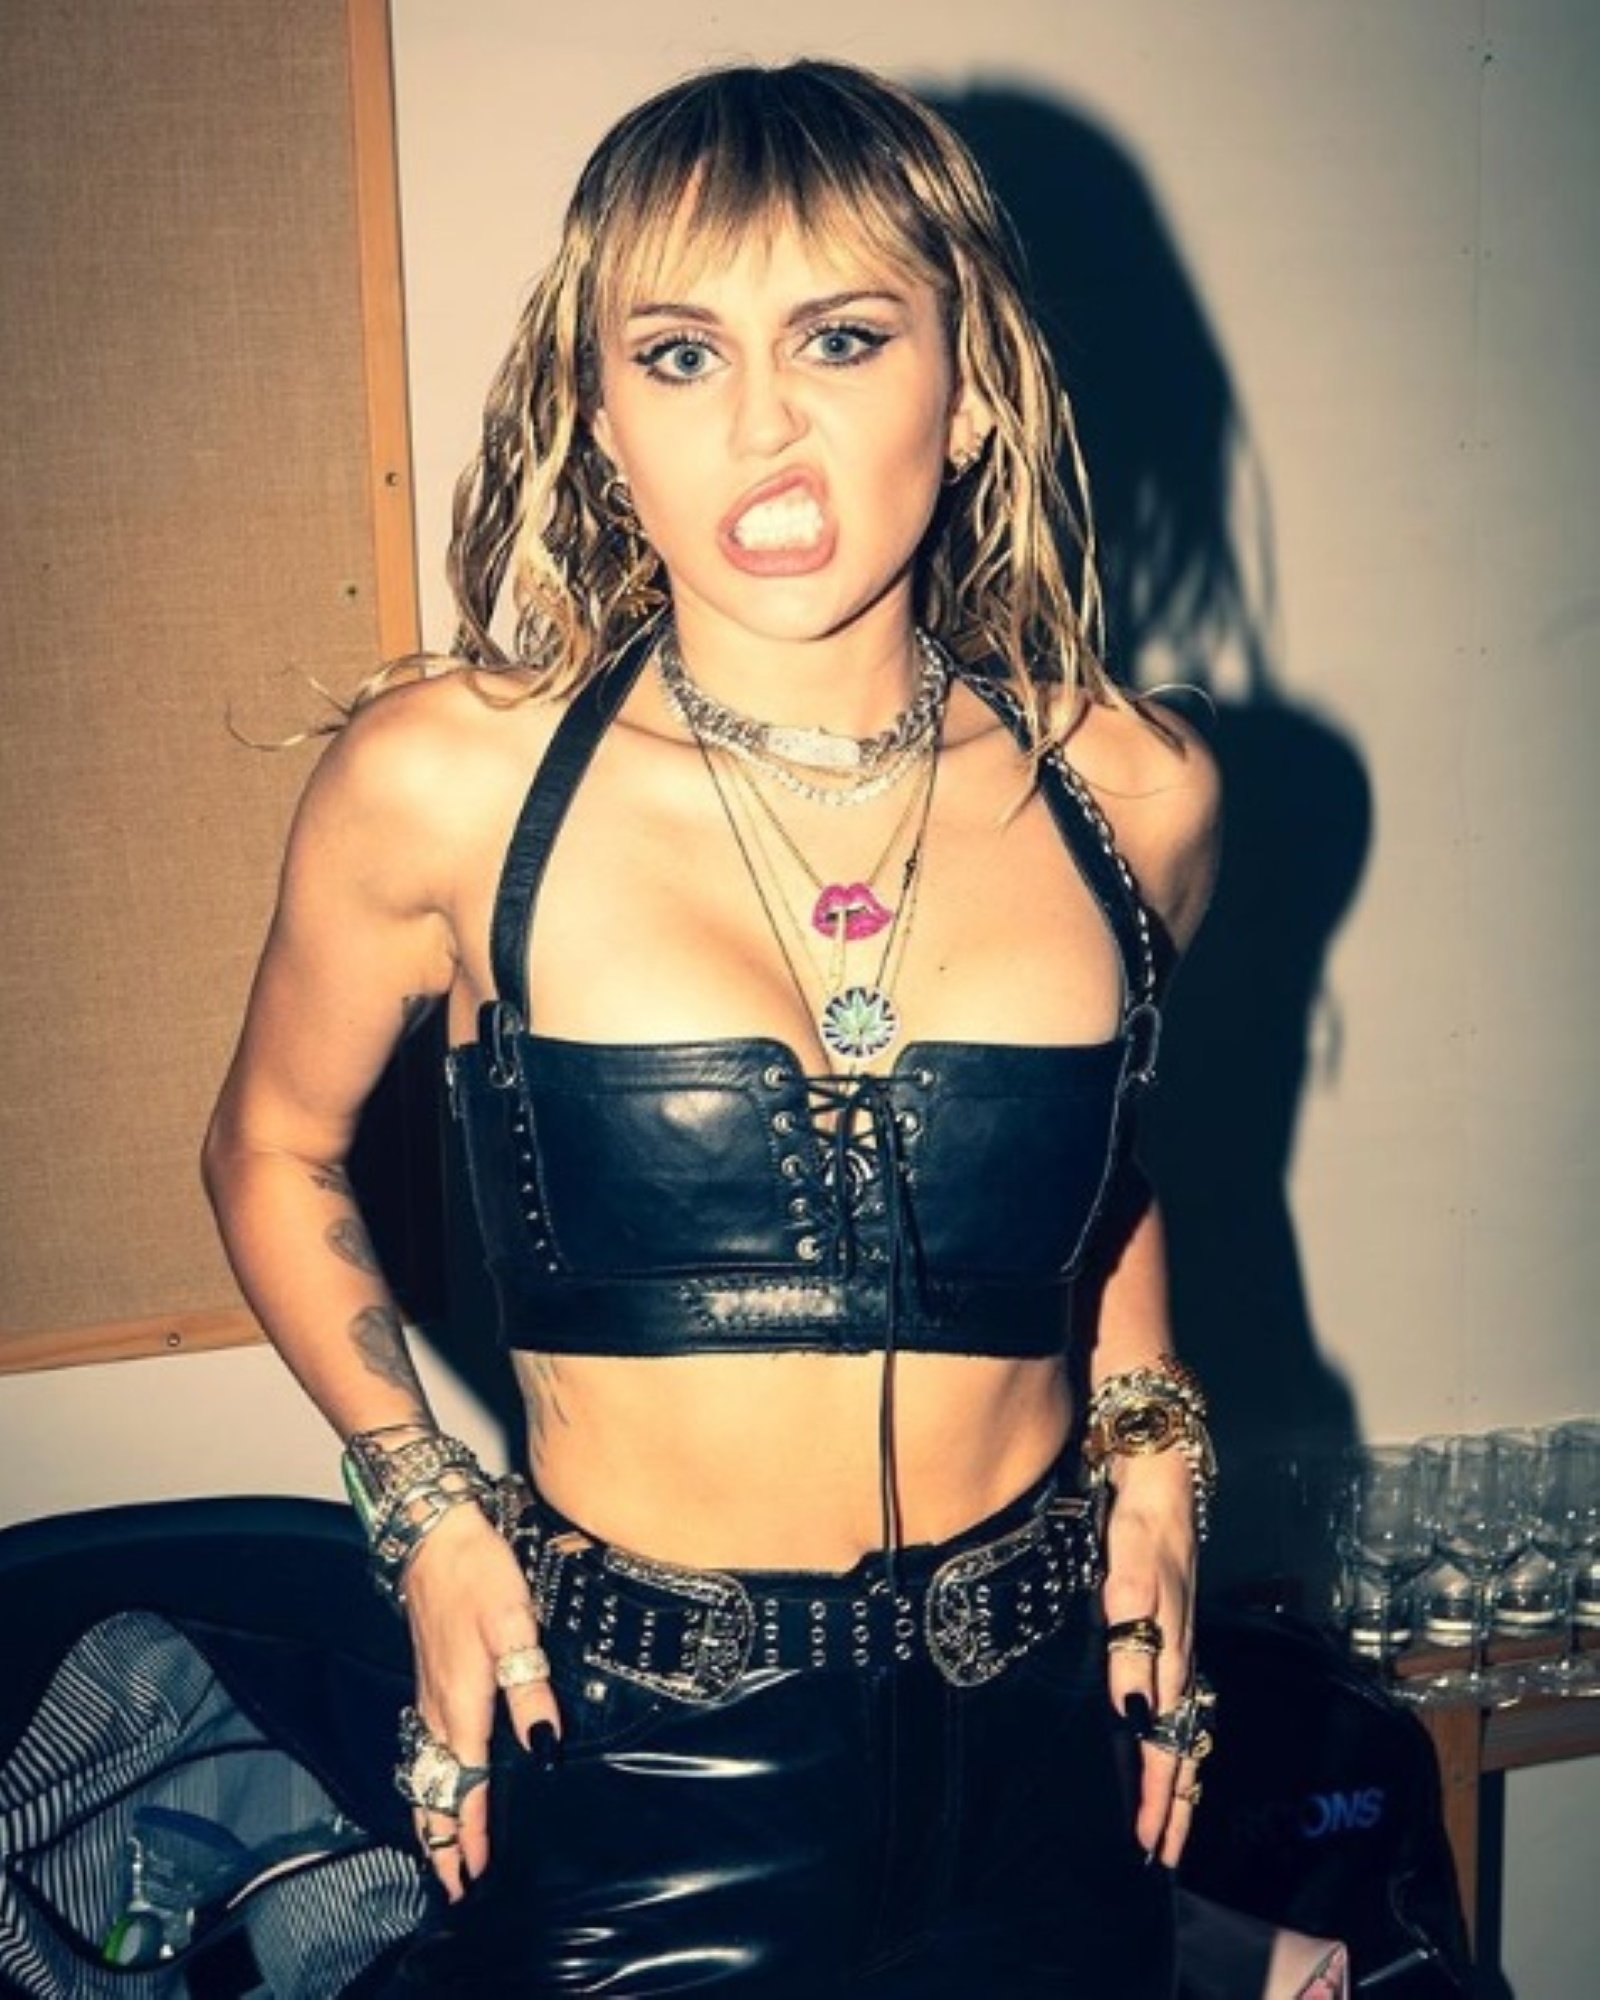 Miley Cyrus, furiosa, se pronuncia sobre su divorcio: "No soy una mentirosa"